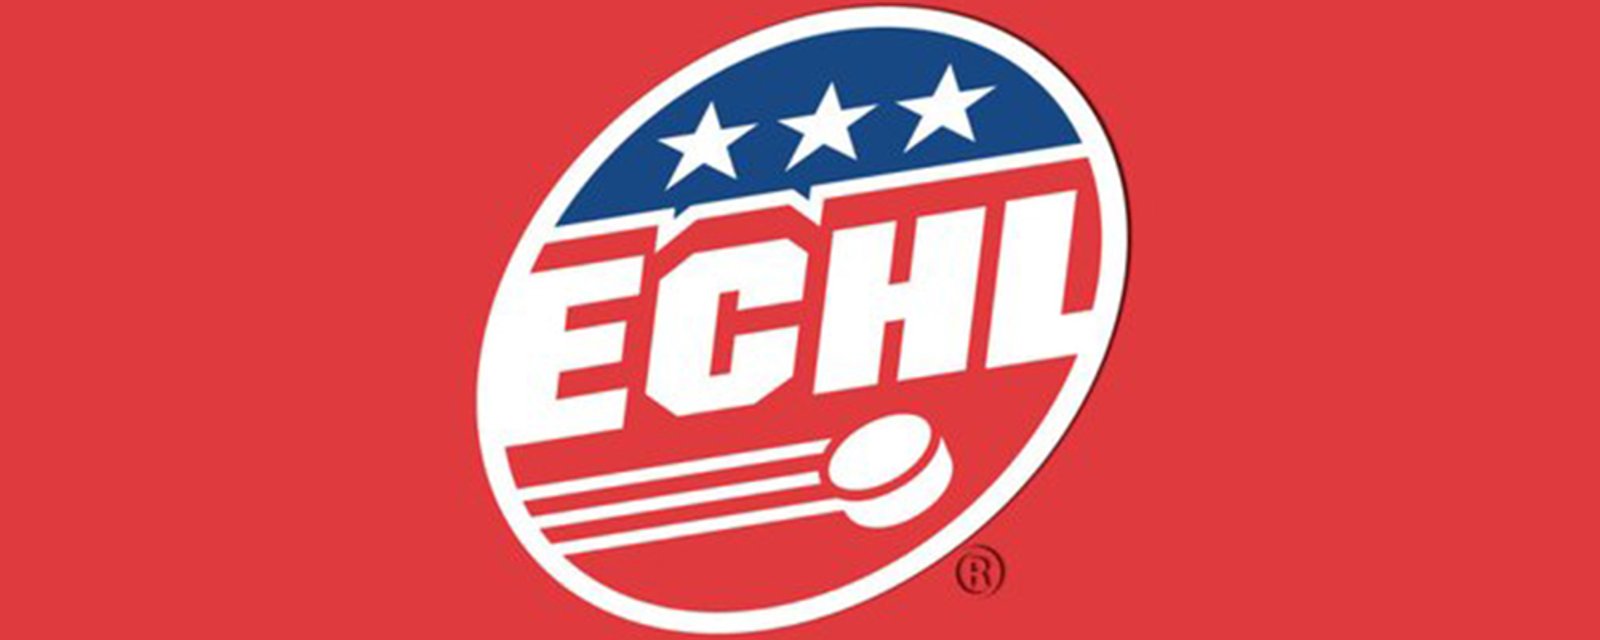 More than a half dozen ECHL teams will not play this upcoming season